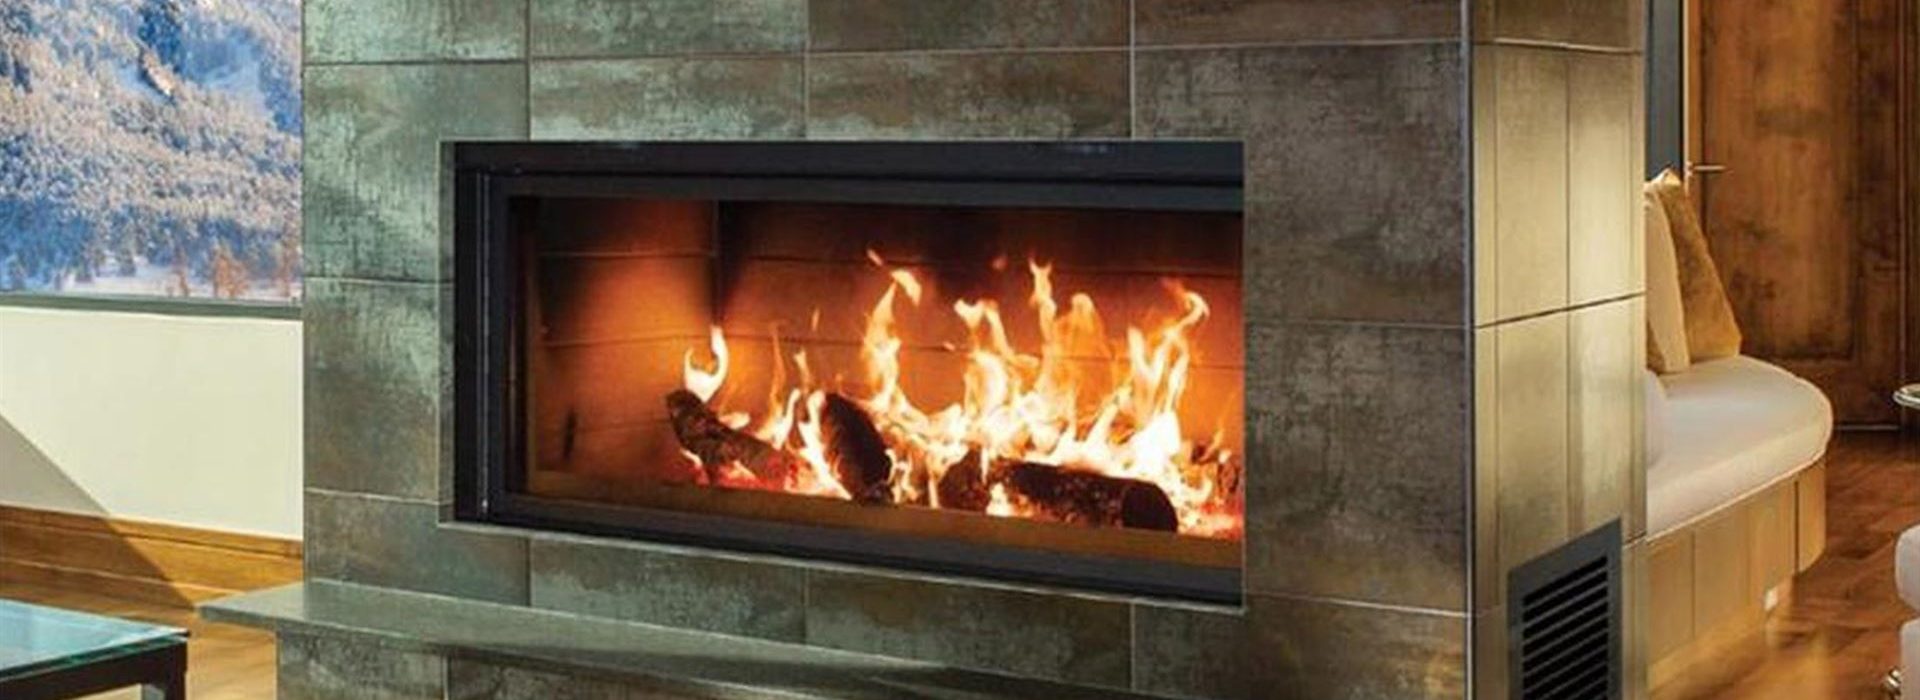 renaissance fireplace insert